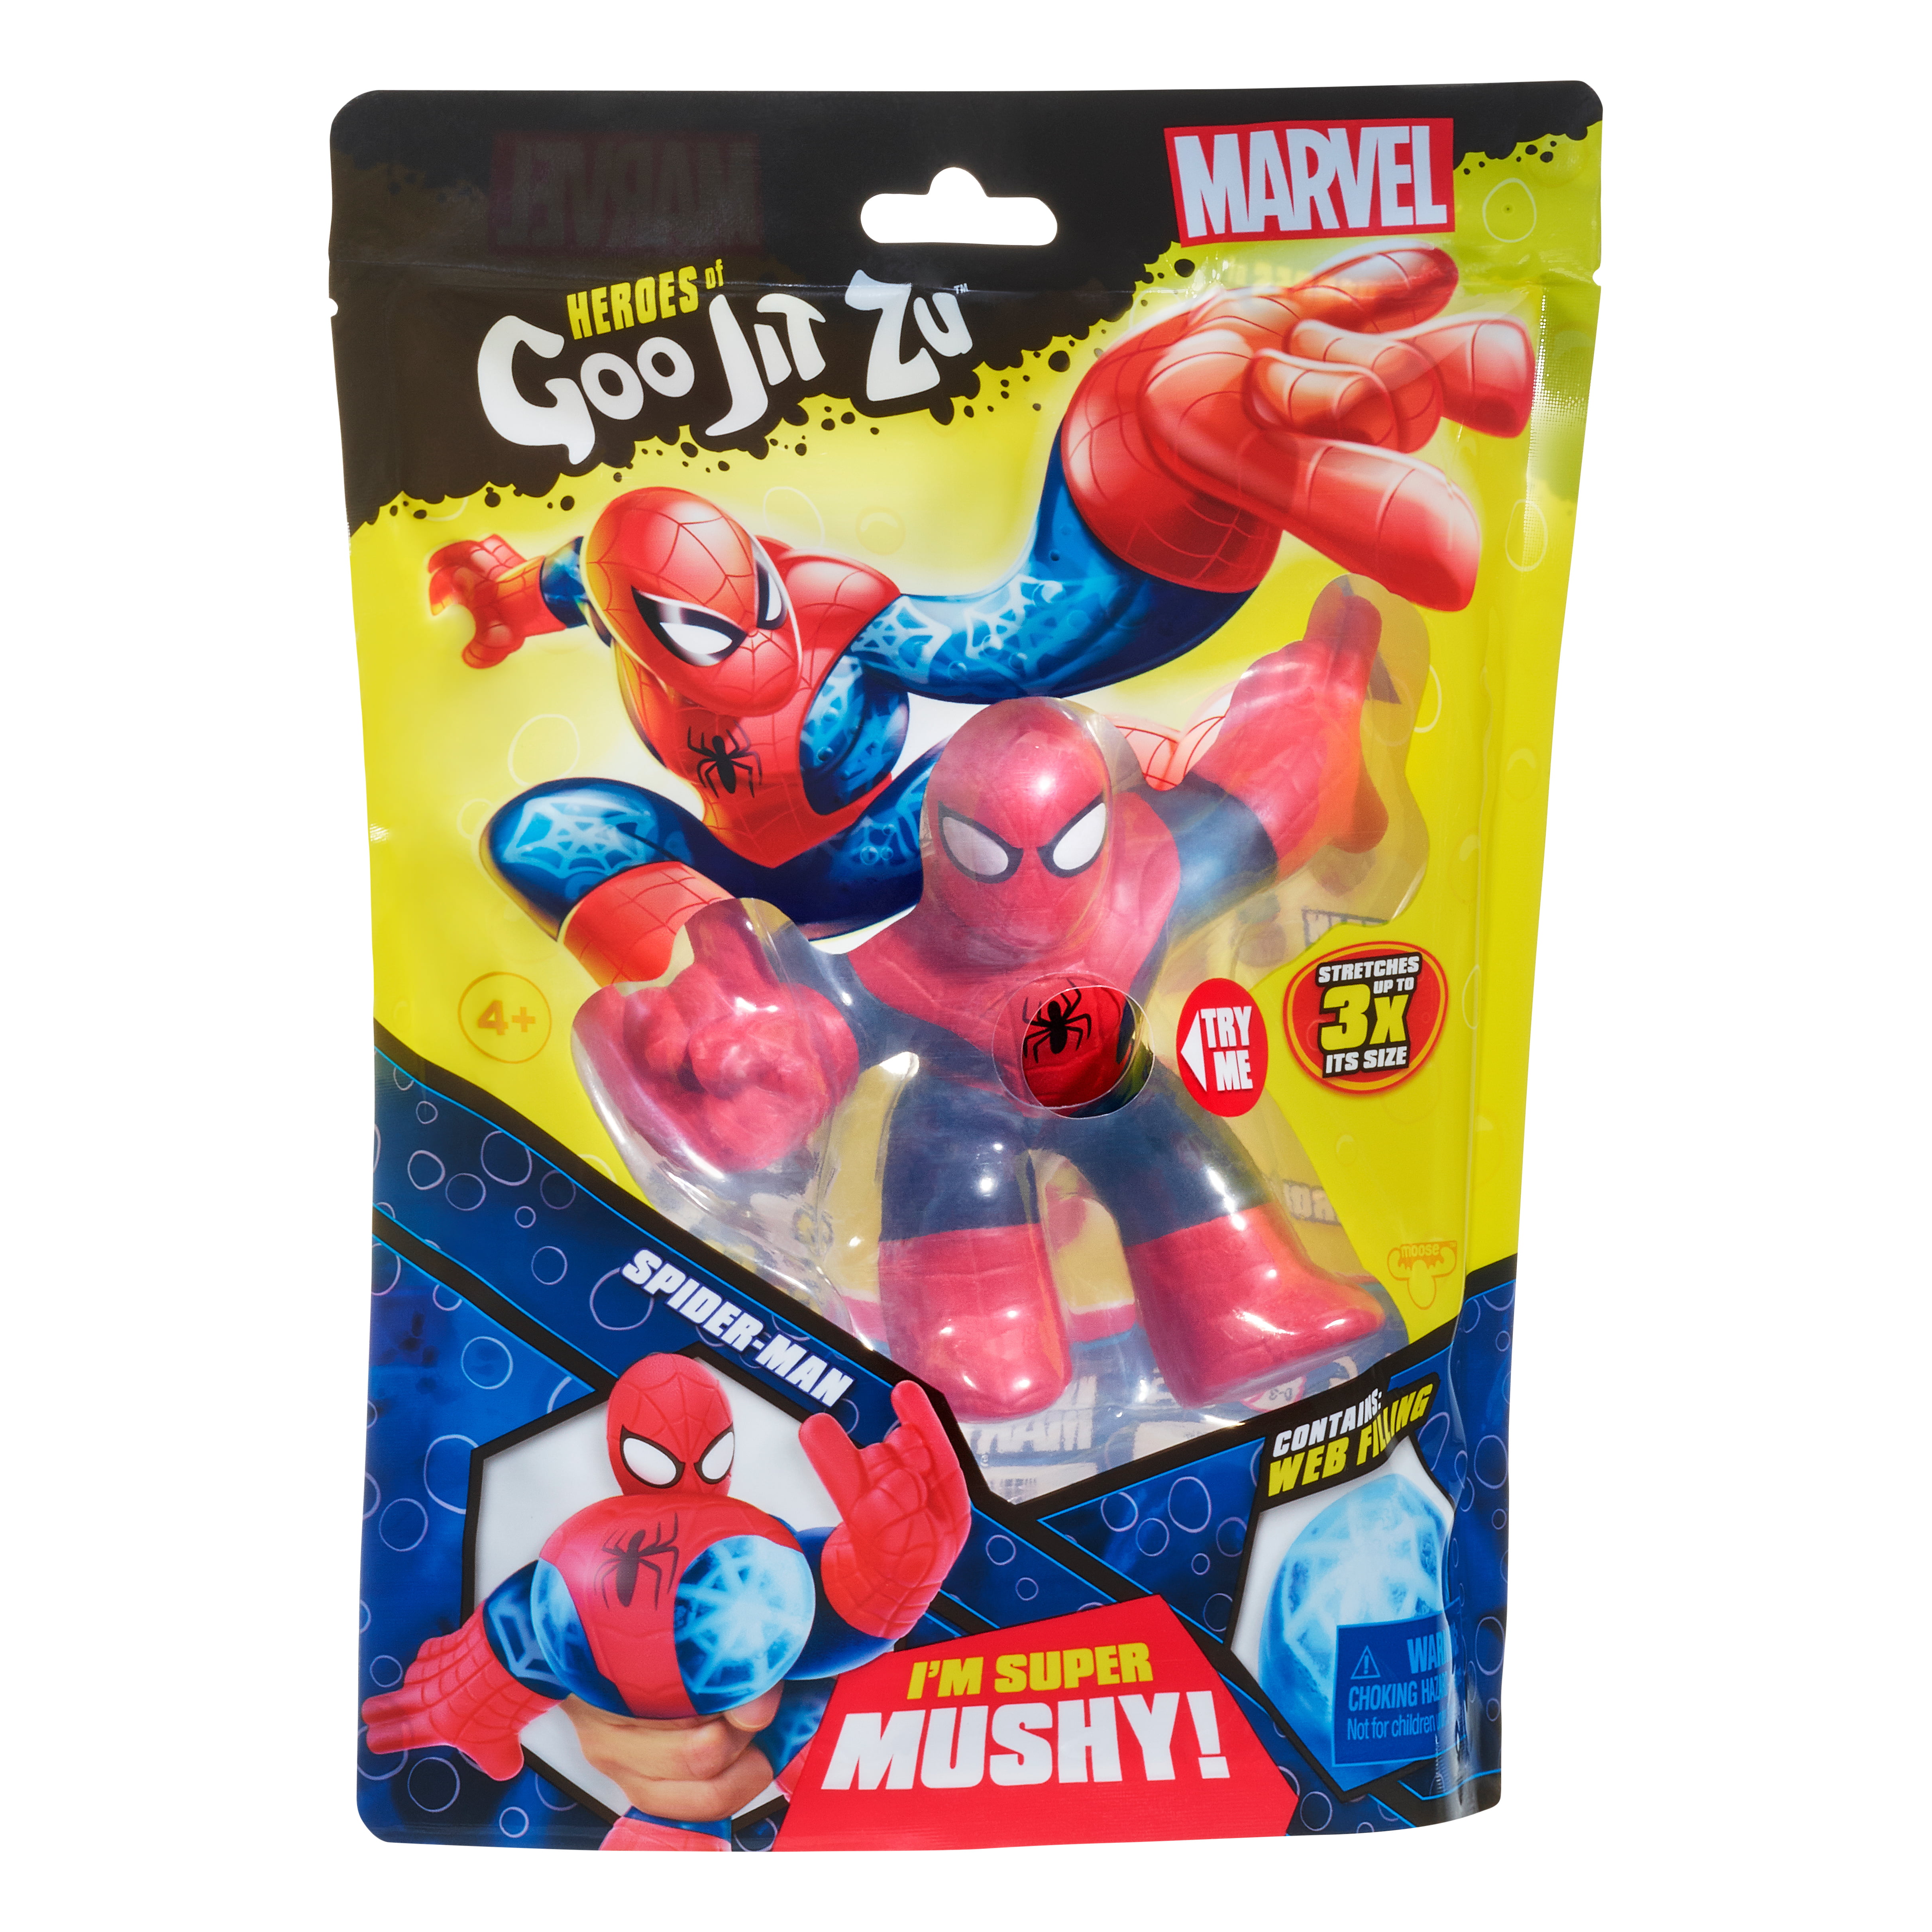 SPIDER-MAN Marvel Superheroes Figure Heroes of Goo Jit Zu